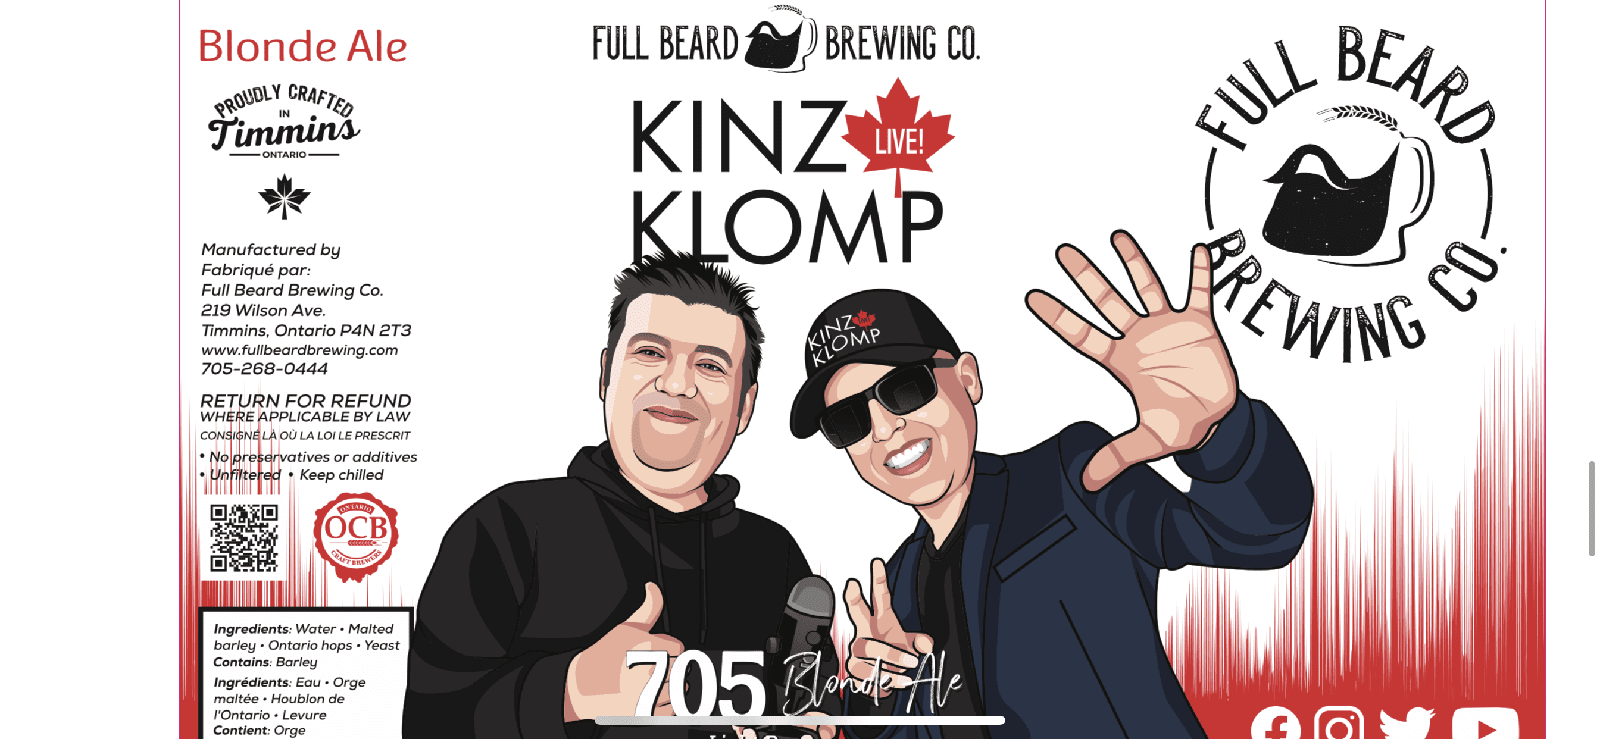 A-Kinz & Klomp 705- Blonde Ale - Full Beard Brewing